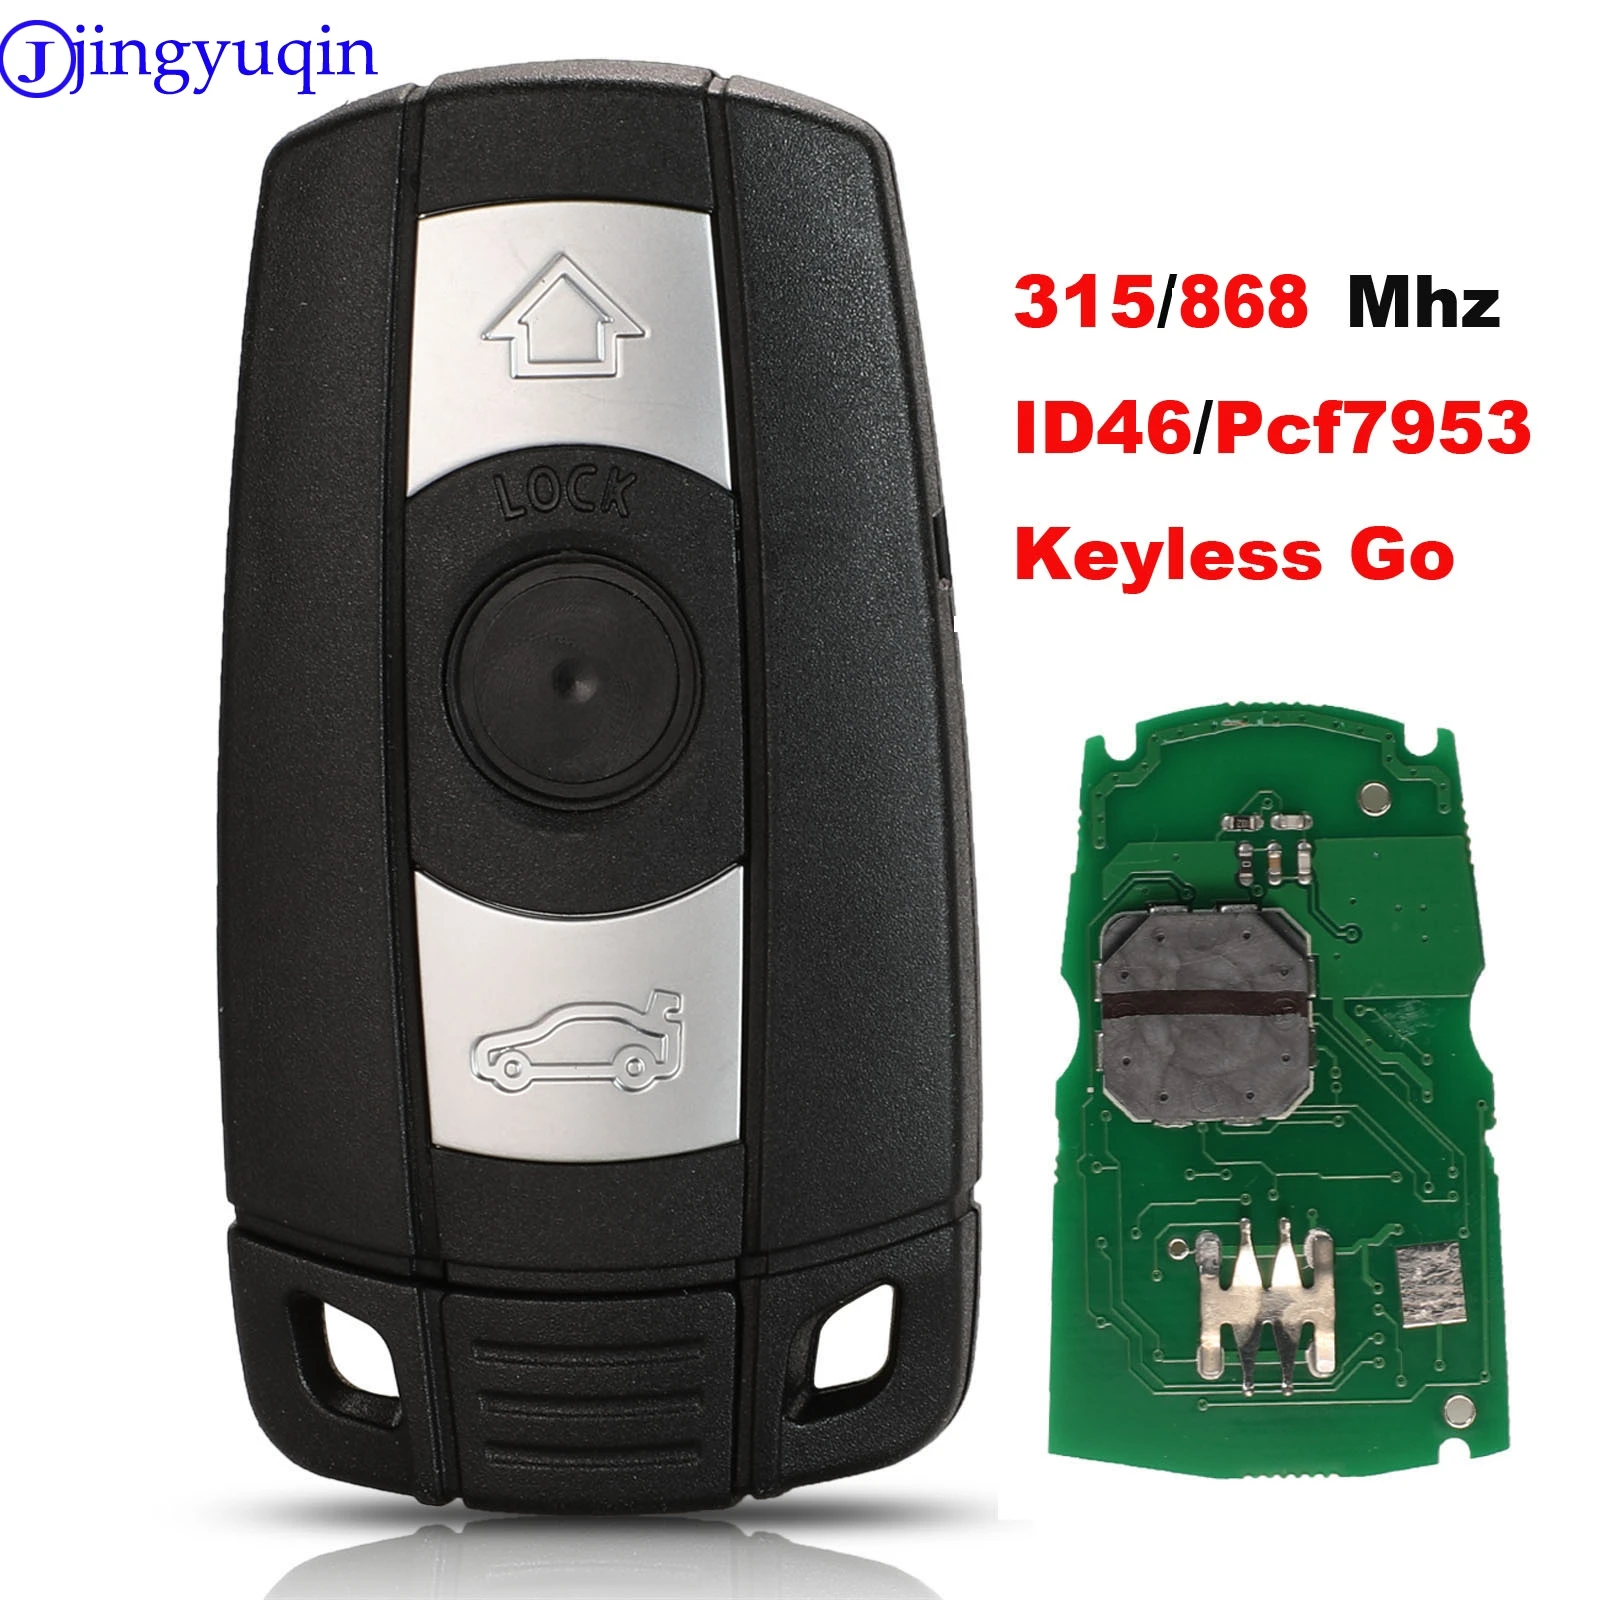 jingyuqin Keyless Go Smart Car Key 315/868 Mhz For BMW 1/3/5/7 Series CAS3 X5 X6 Z4 Car Keyless Control Transmitter with Chip